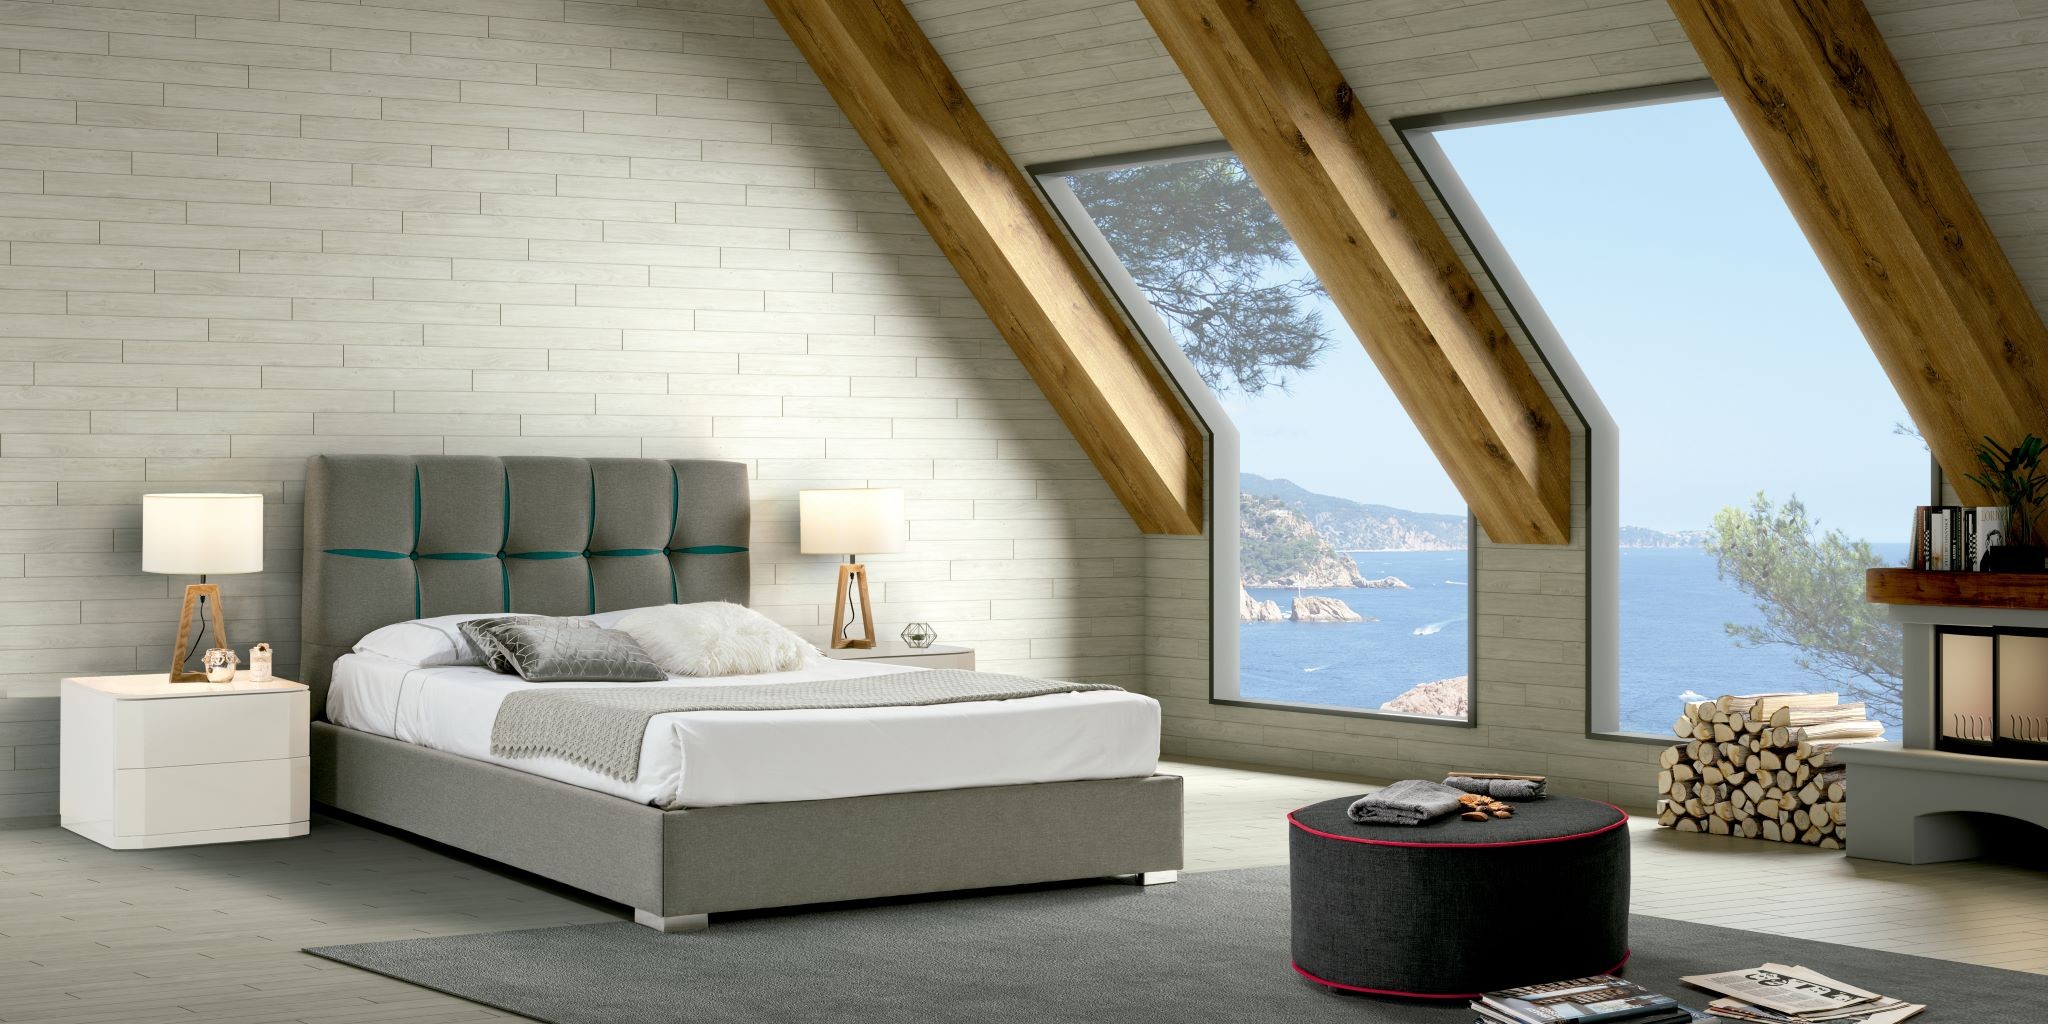 Estila Dizajnová manželská postel Veronica s šedým čalouněním s geometrickým vzorem 140-180cm